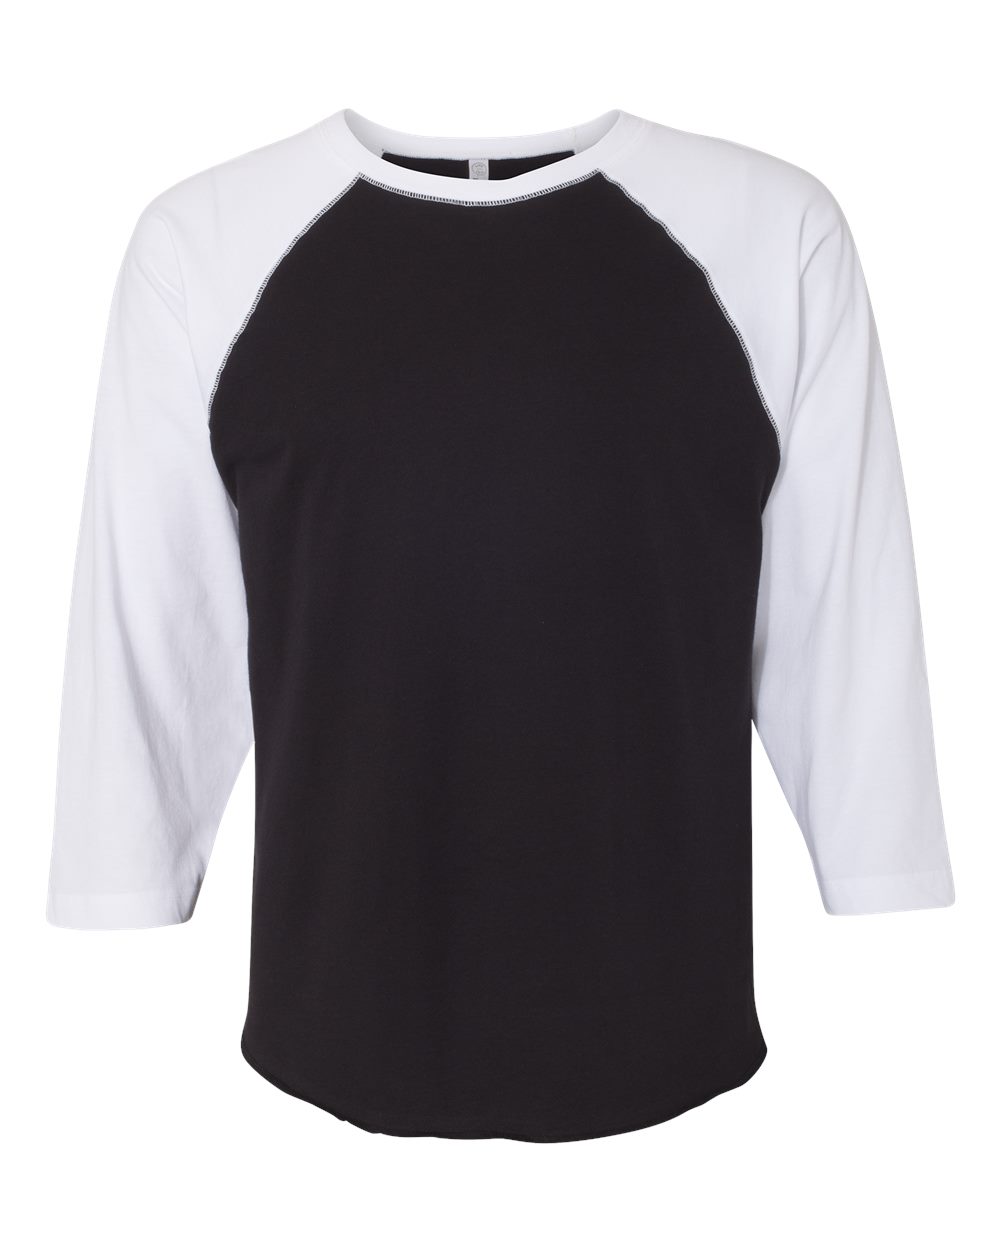 LAT 6930 Adult Baseball Fine Jersey T-Shirt - White/ Black - 3XL